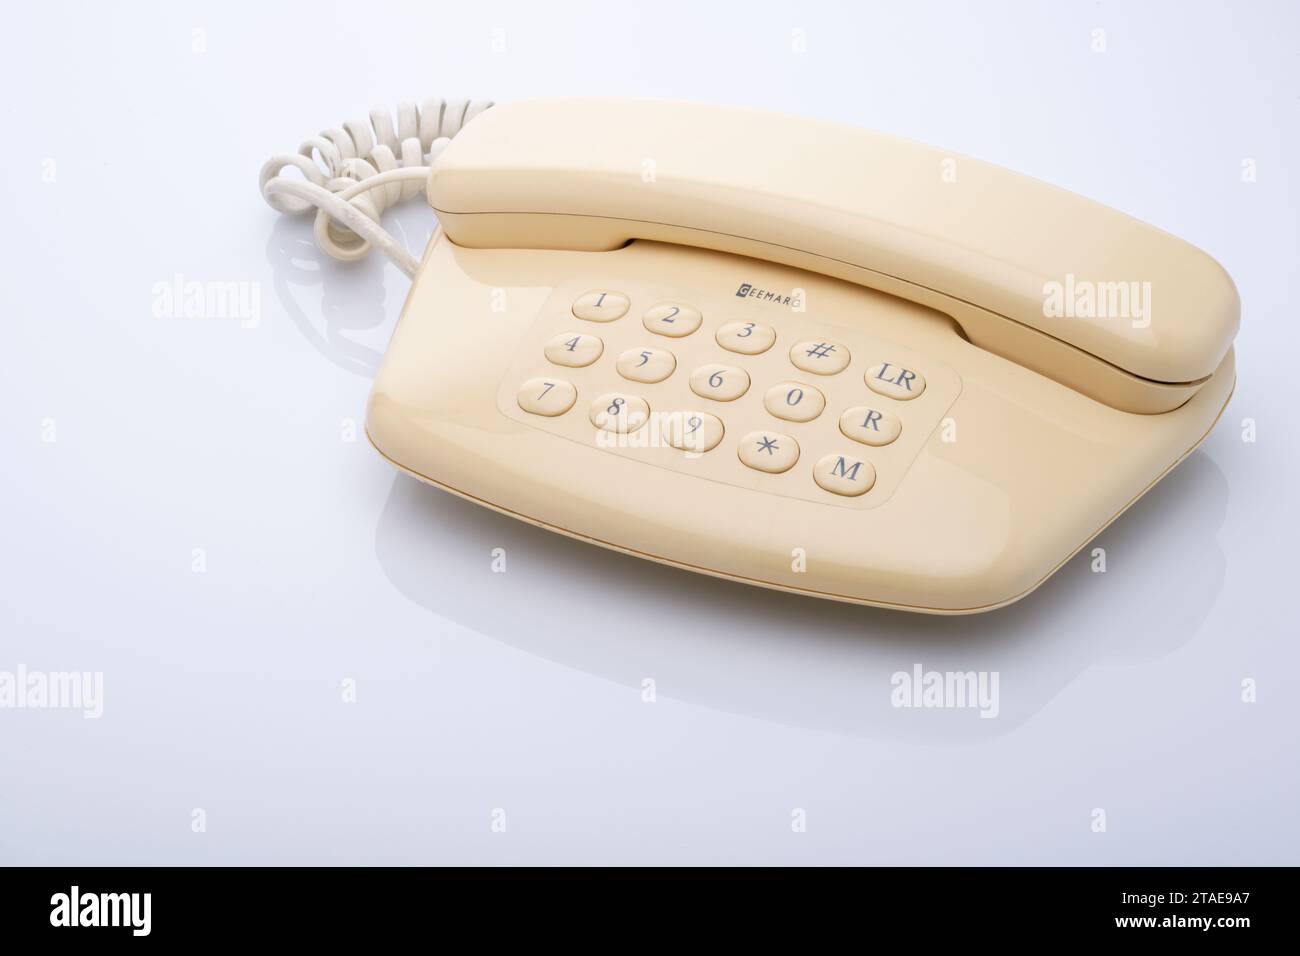 Ein traditionelles Telefon. Kommunikationsgerät. Sprich mit jemandem am Telefon. Vor weißem Hintergrund. Stockfoto